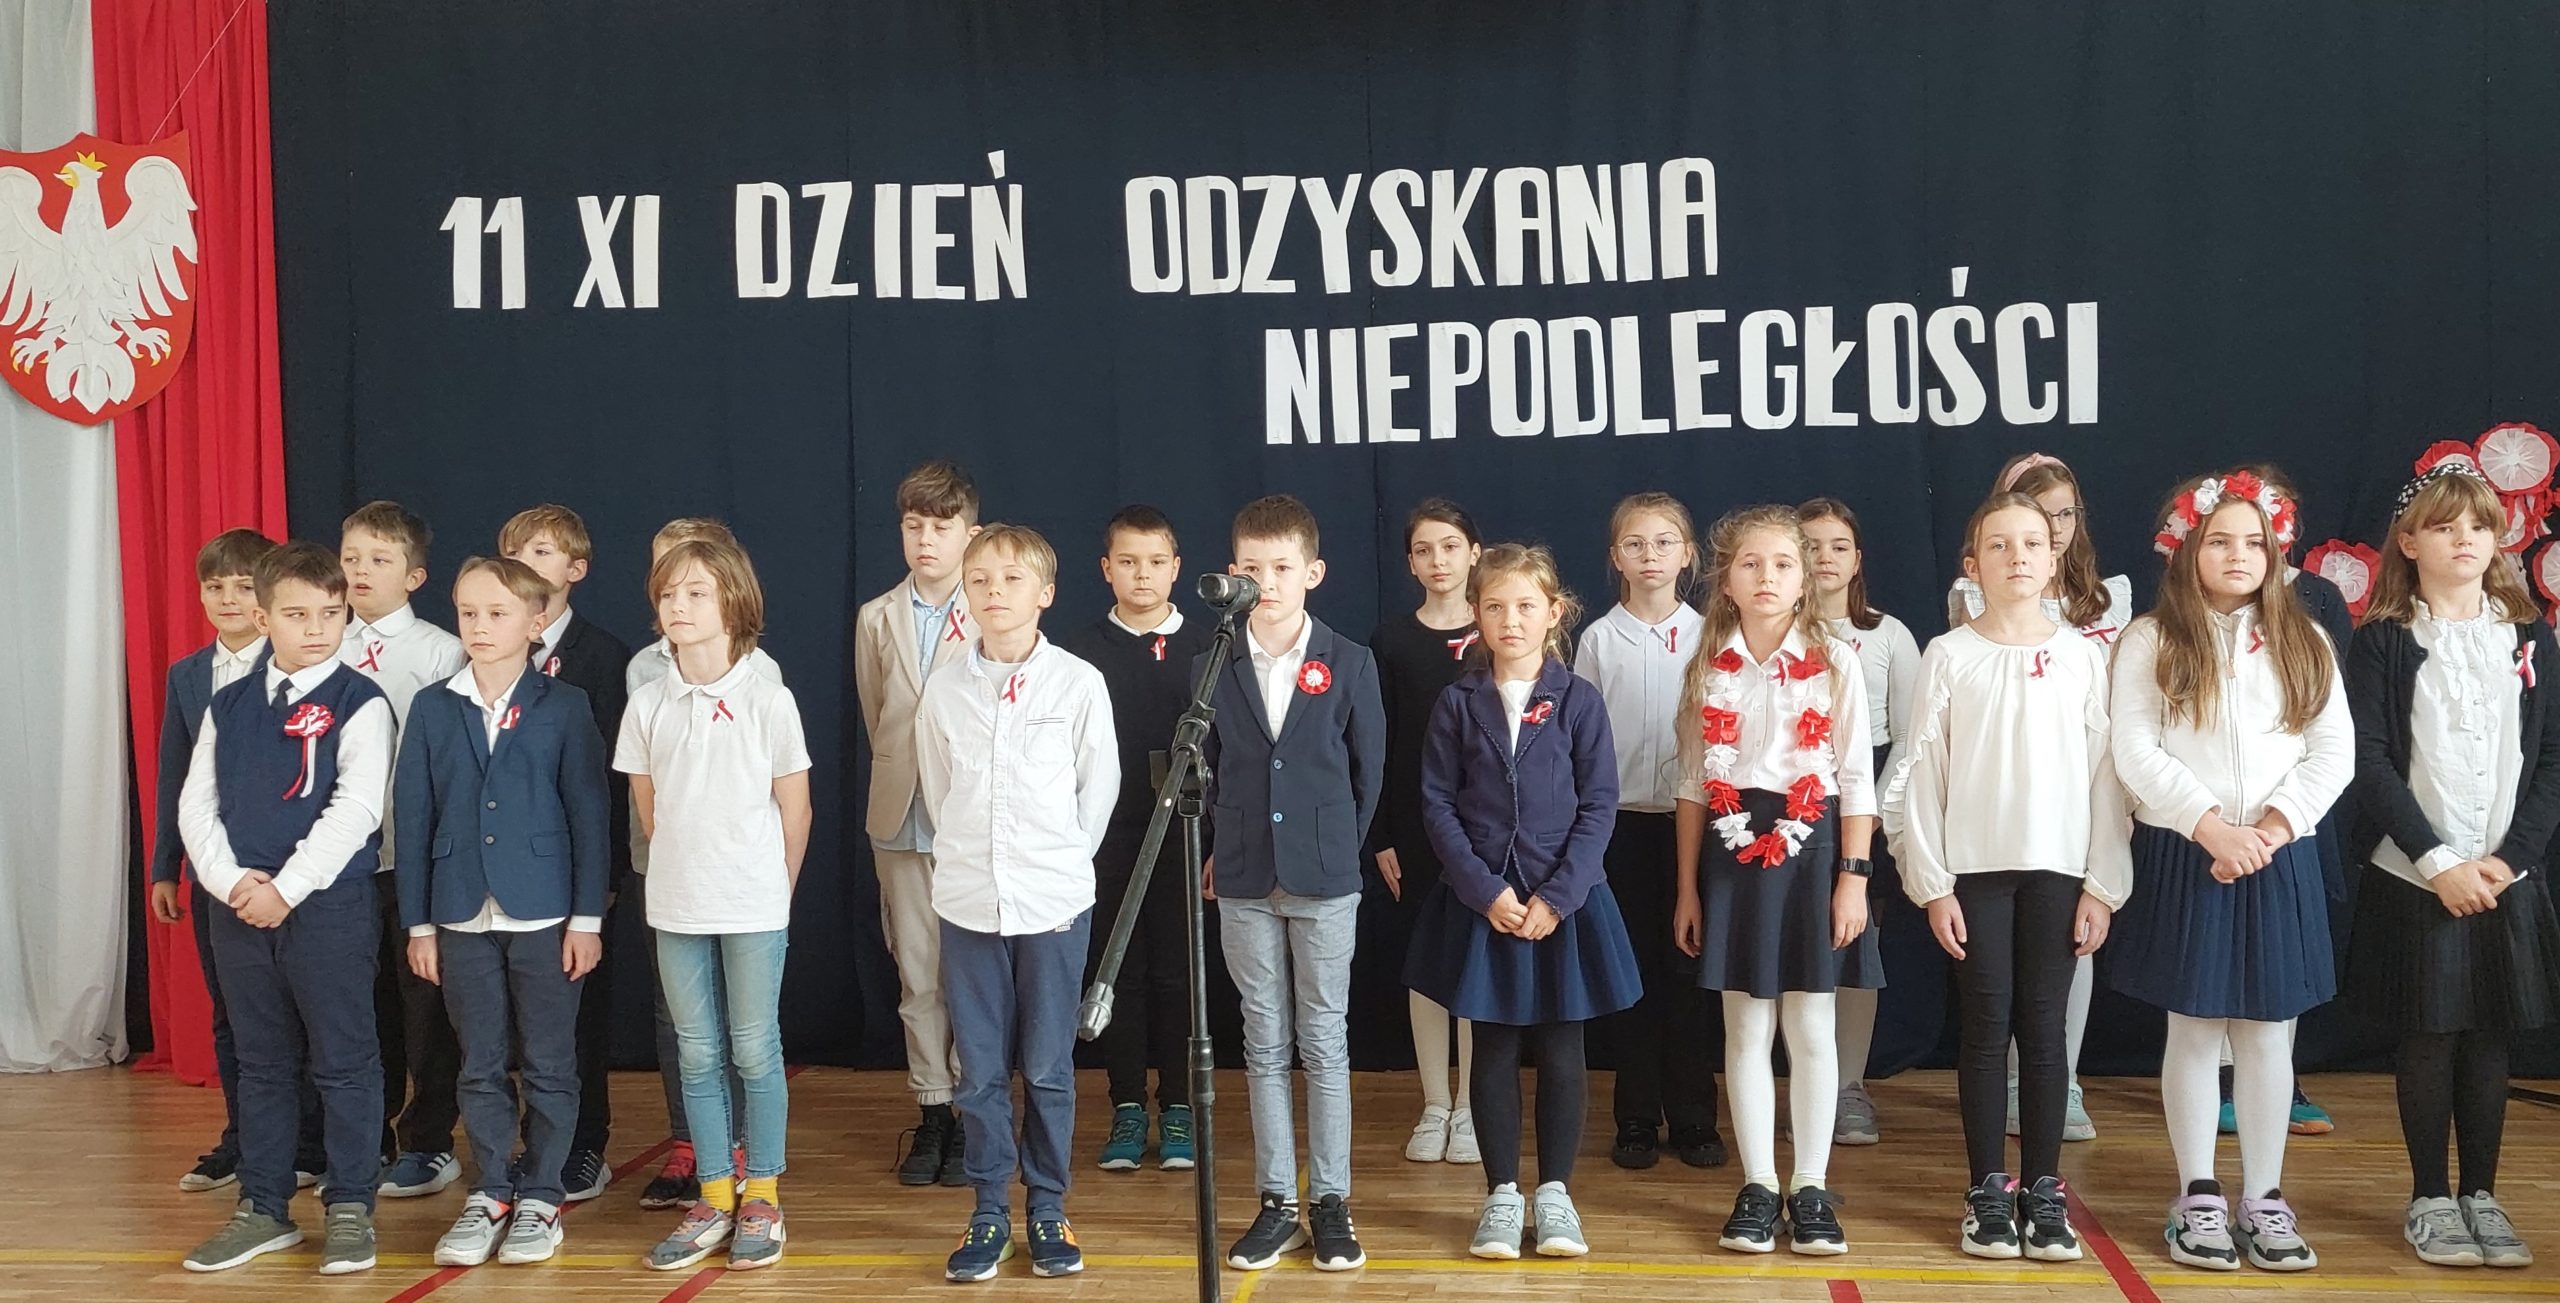 Ponad 20 ubranych na galowo dzieci stoi na sali. W tyle godło Polski na tle biało czerwonej flagi, a nad dziećmi napis: 11 XI dzień odzyskania niepodległości